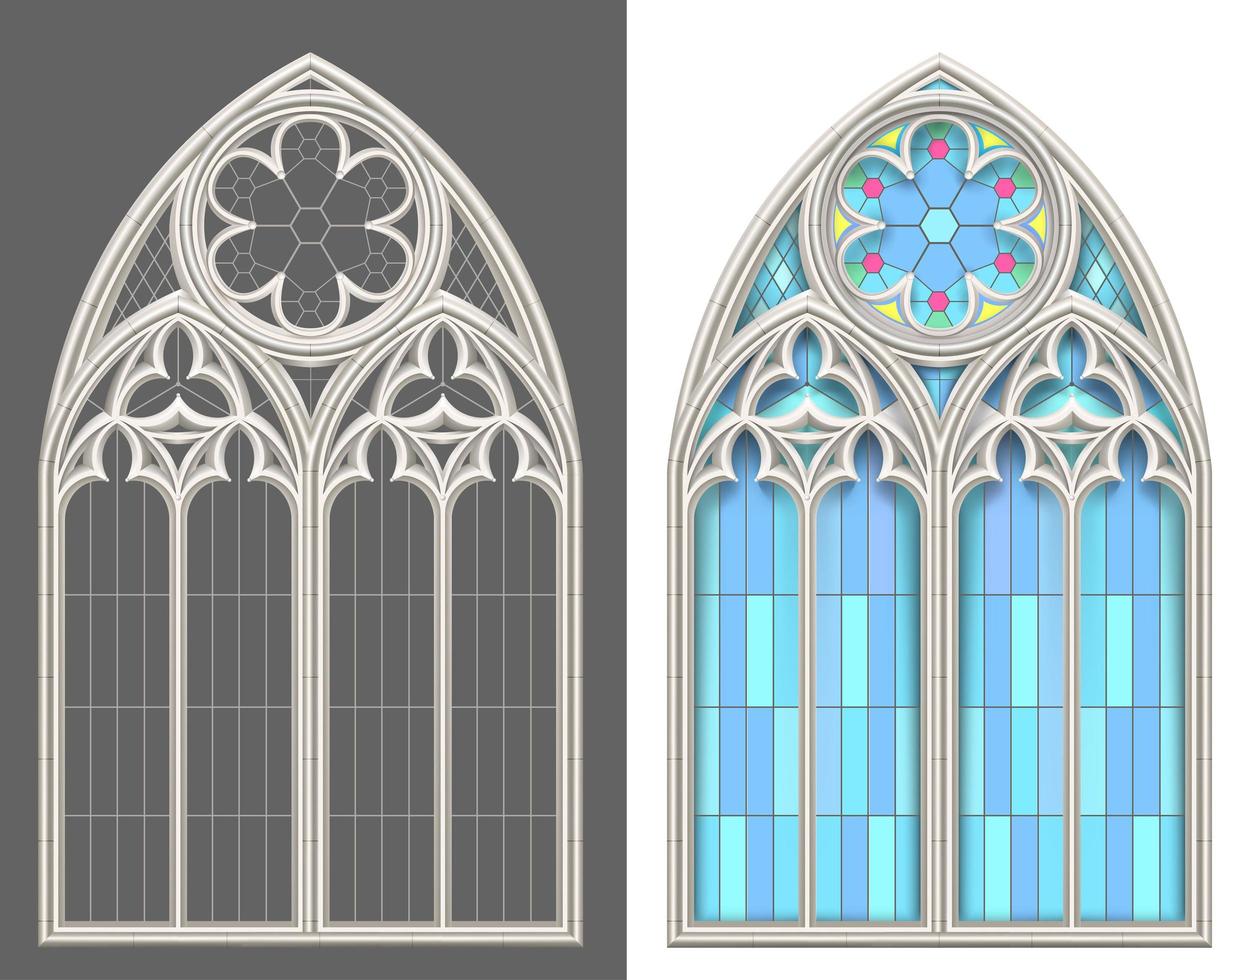 conjunto de vectores de vidrieras góticas medievales